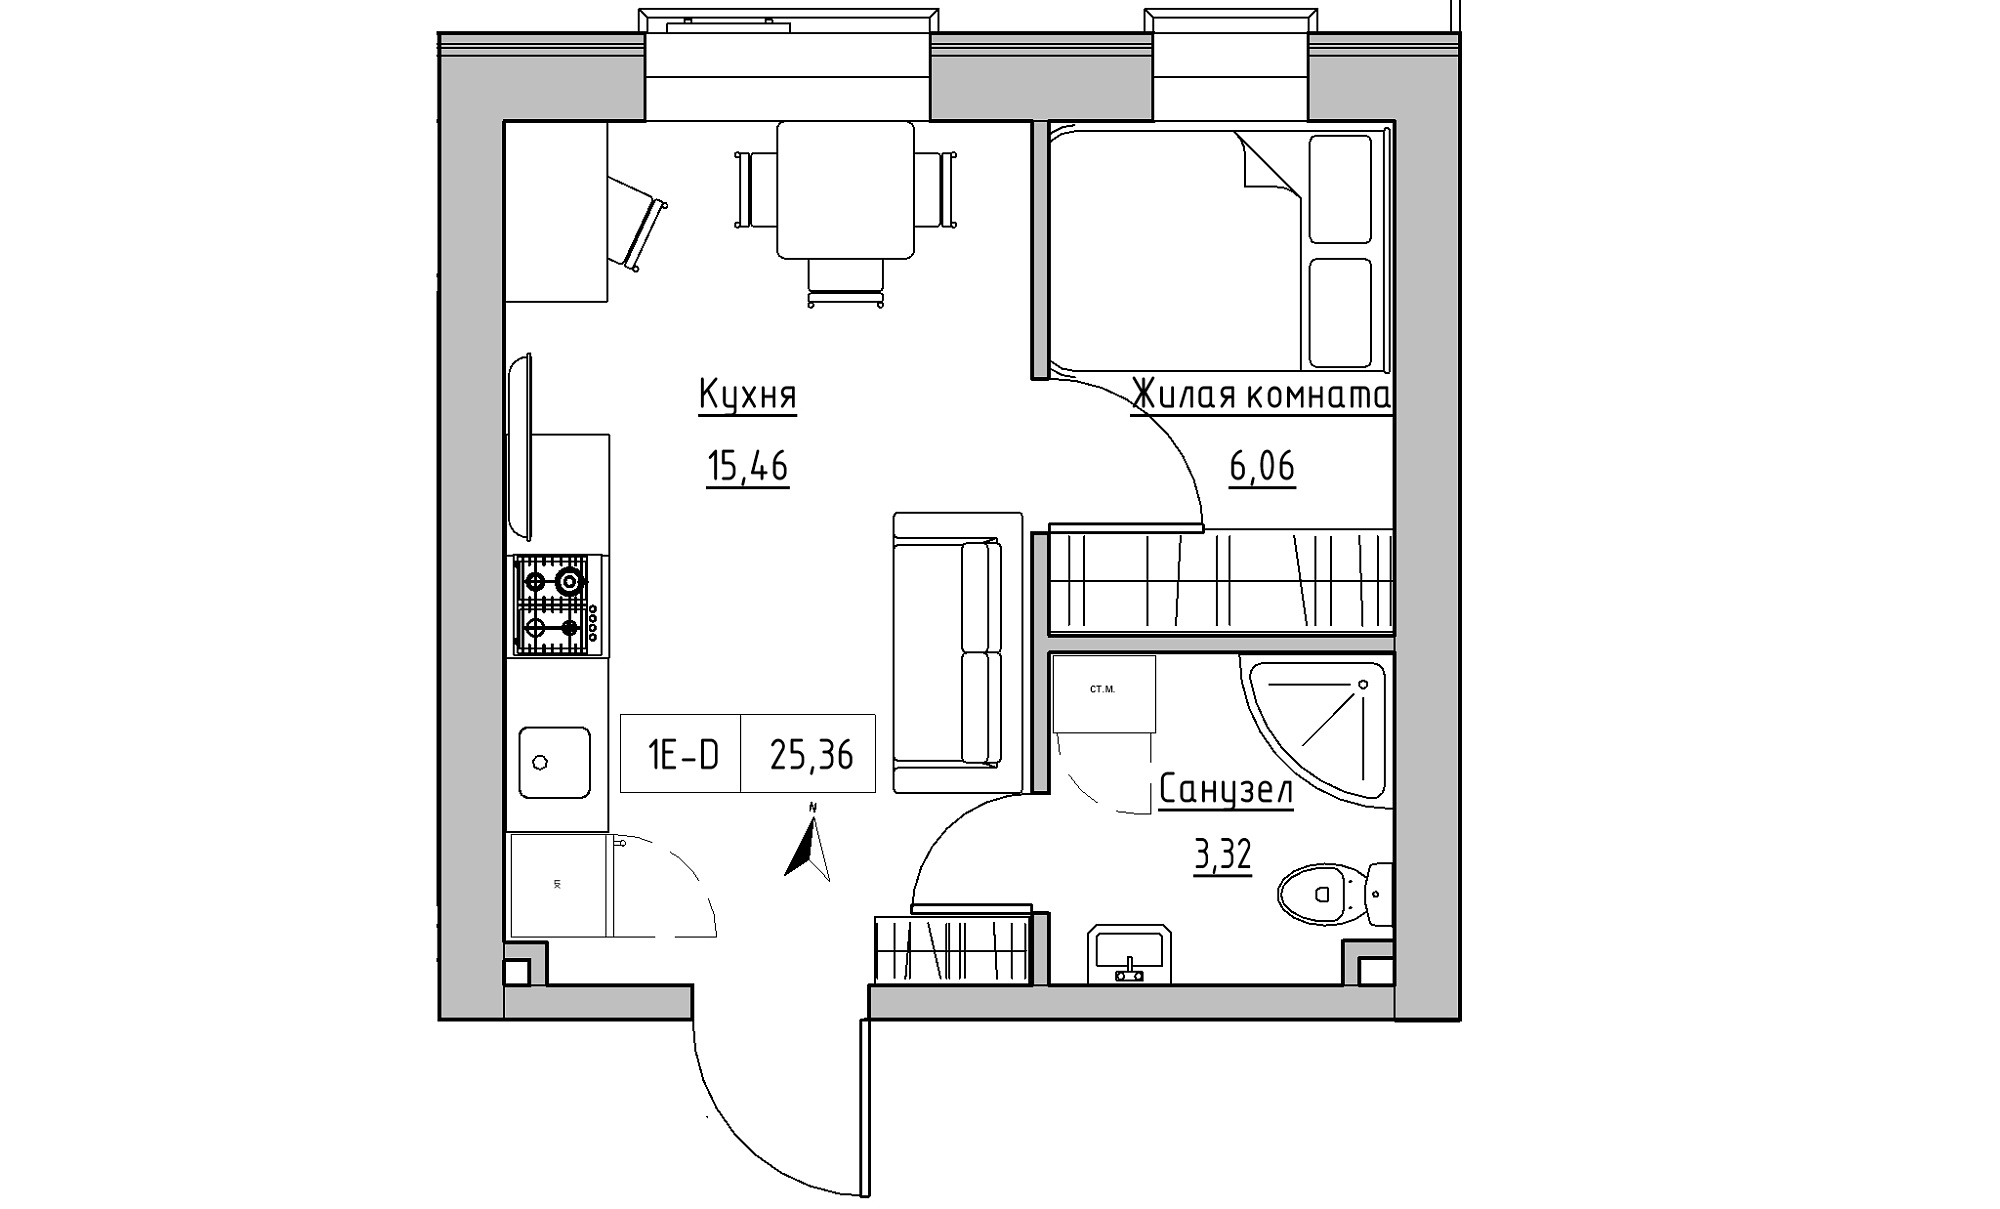 Планировка 1-к квартира площей 25.36м2, KS-016-05/0002.